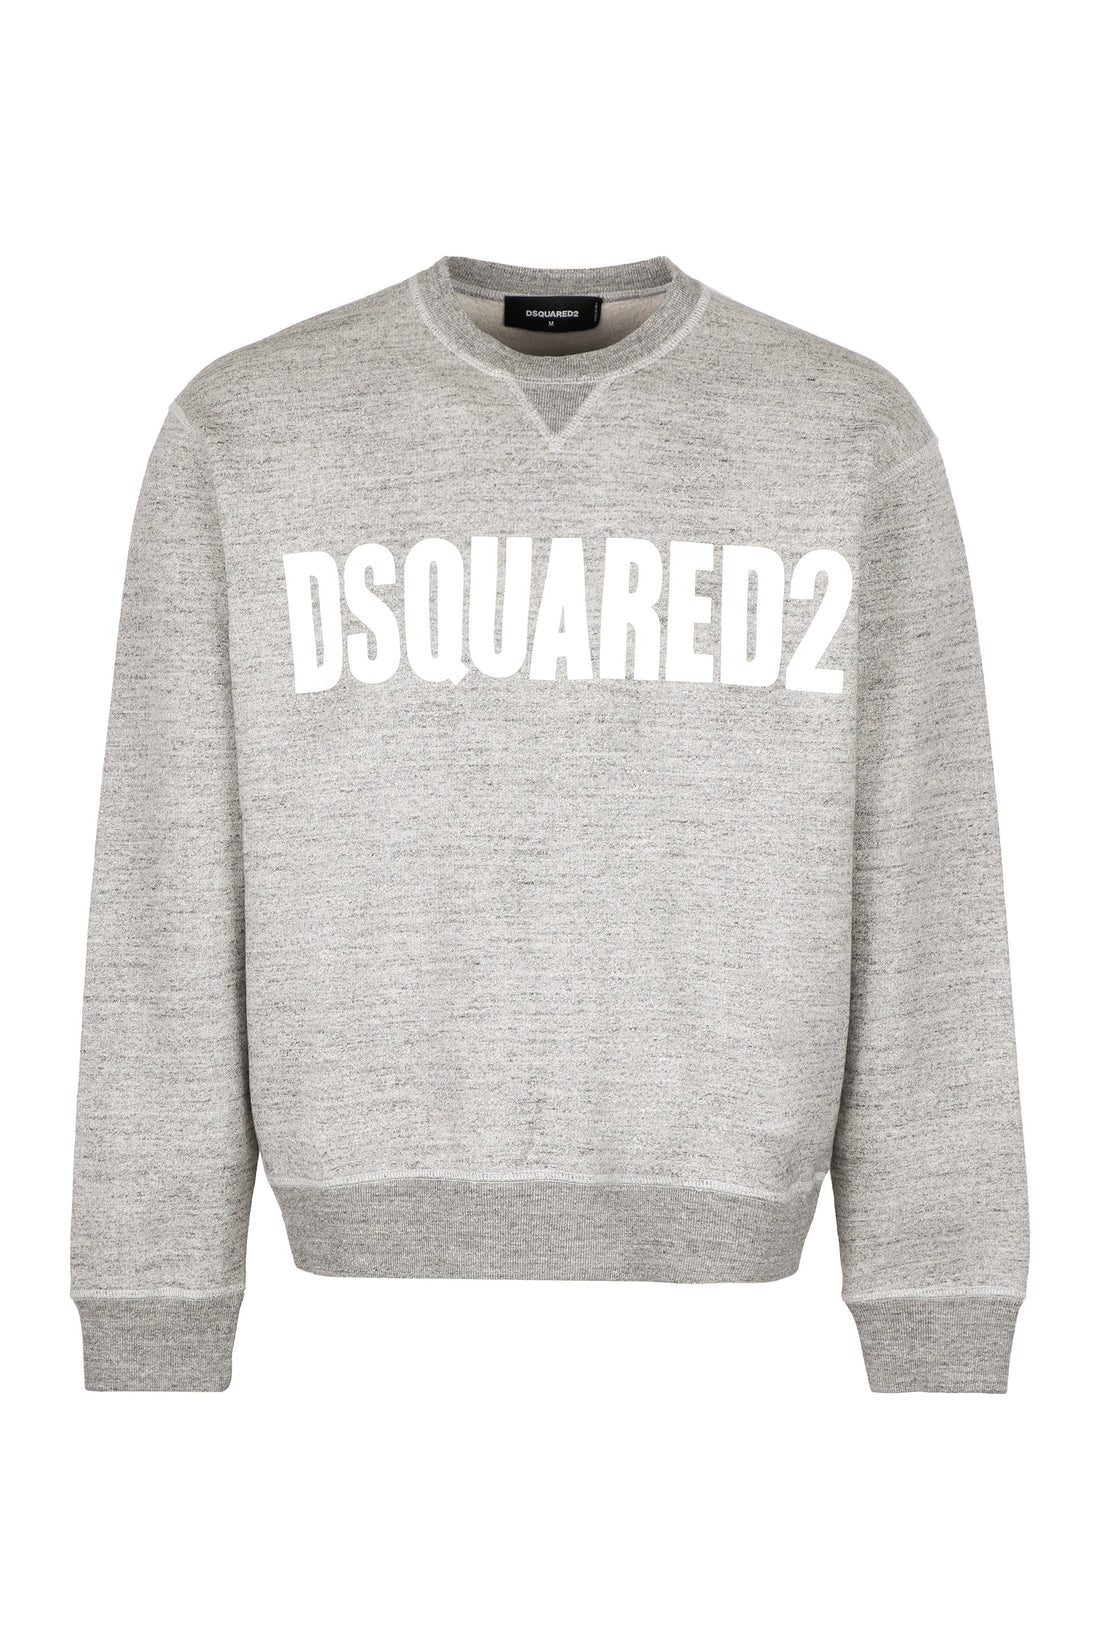 Dsquared2-OUTLET-SALE-Cotton crew-neck sweatshirt with logo-ARCHIVIST